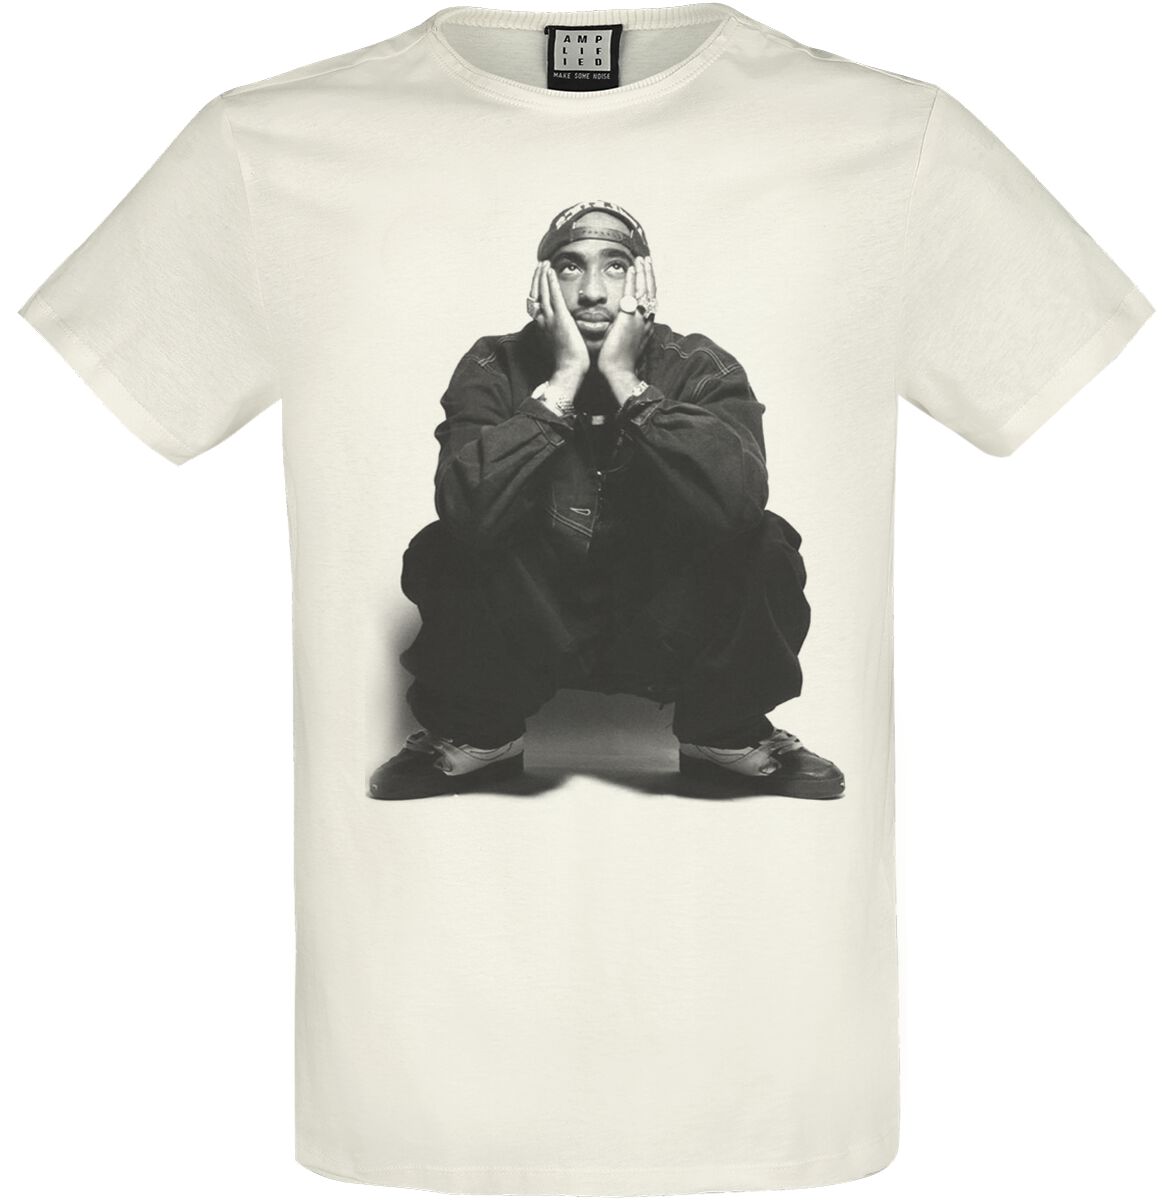 Tupac Shakur T-Shirt - Amplified Collection - Contemplation - S bis XXL - für Männer - Größe XL - altweiß  - Lizenziertes Merchandise!